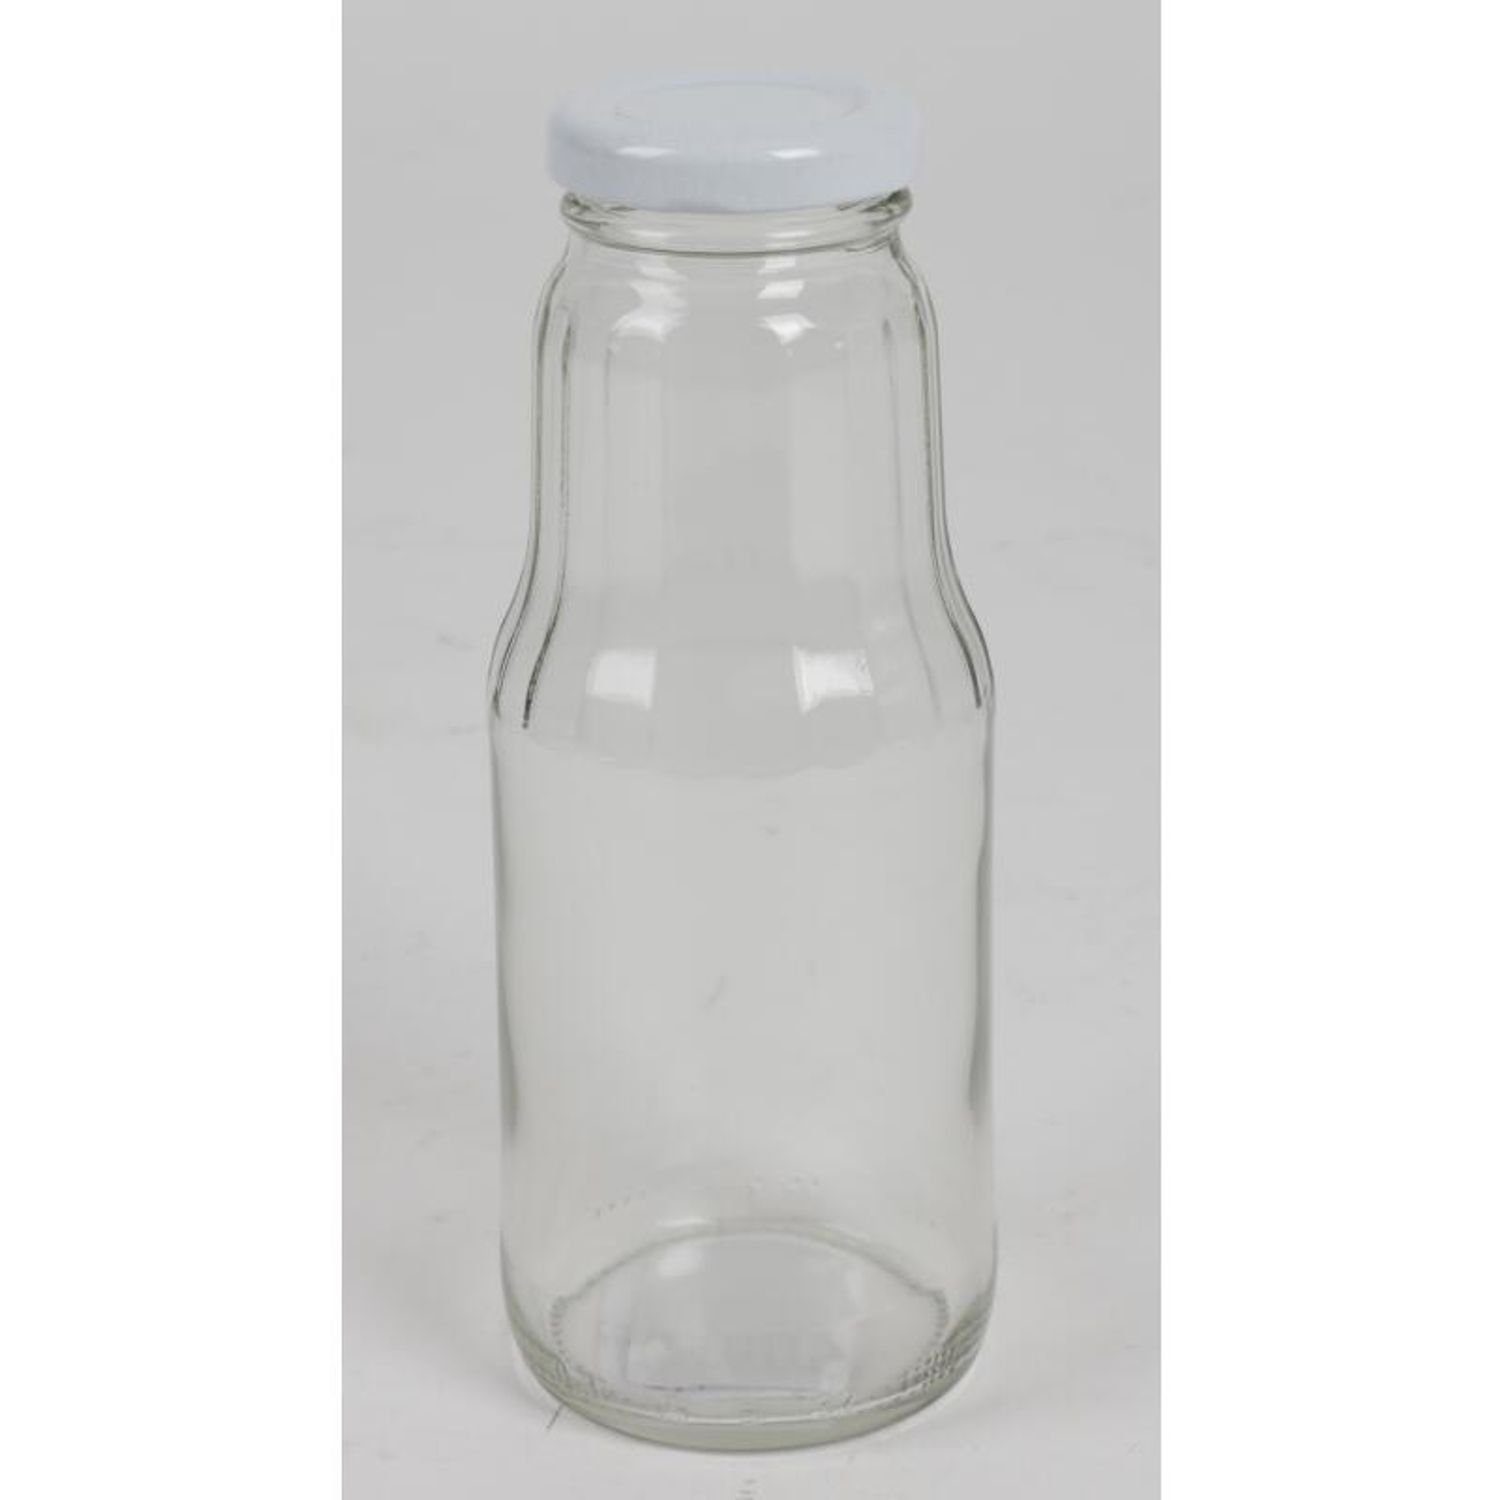 15x Saft Glasflasche Omega Schraubdeckelverschluss Jawna Wasser Küche 0,3L Trinkflasche Spolka Trinken